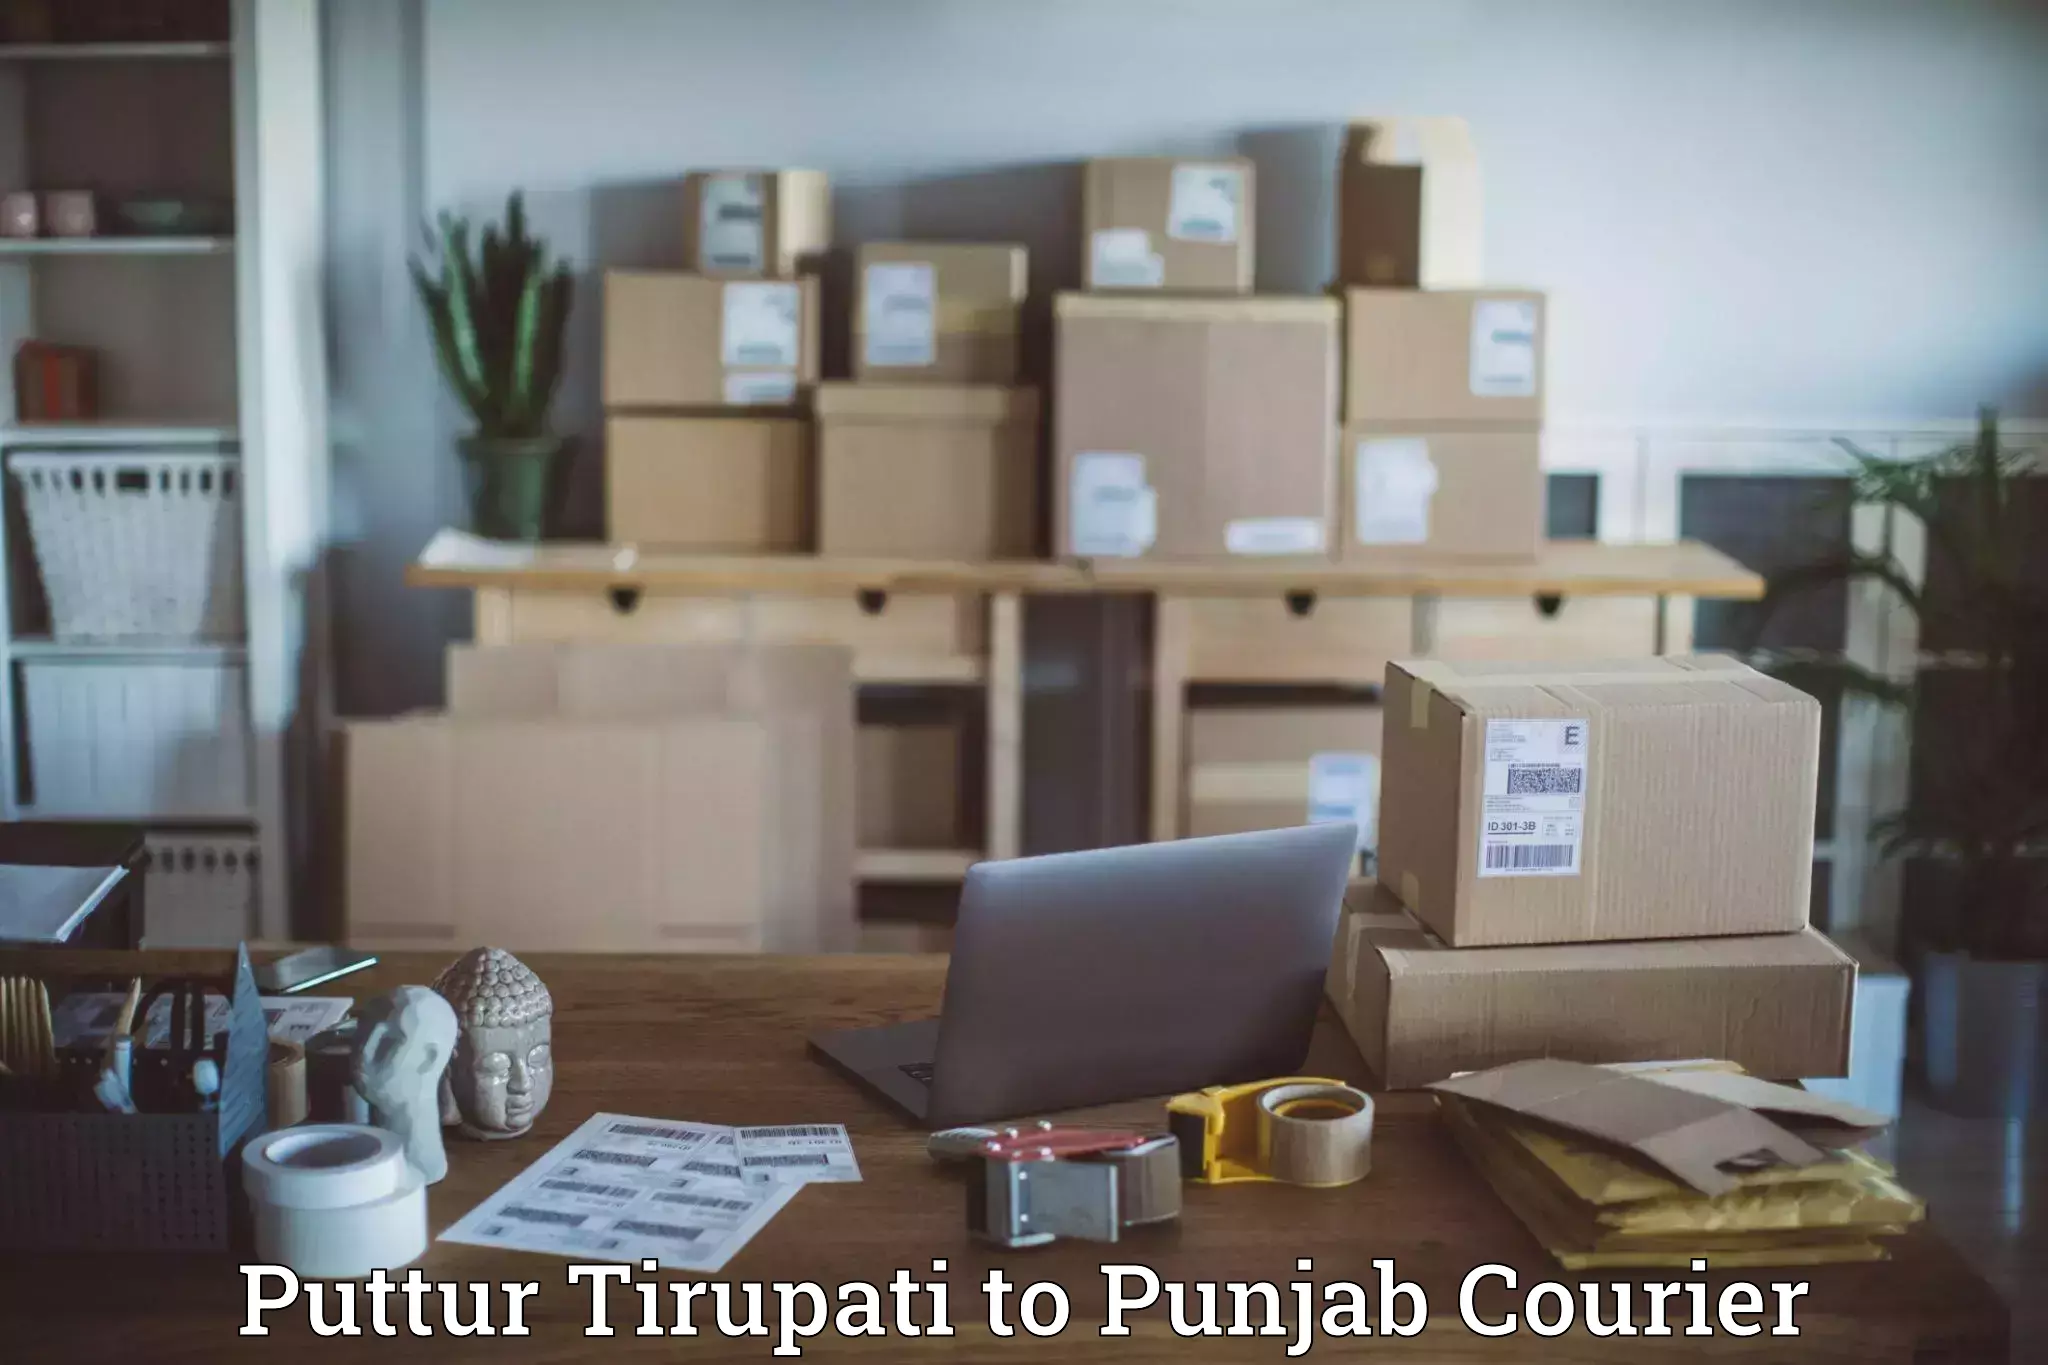 Next-generation courier services Puttur Tirupati to Punjab